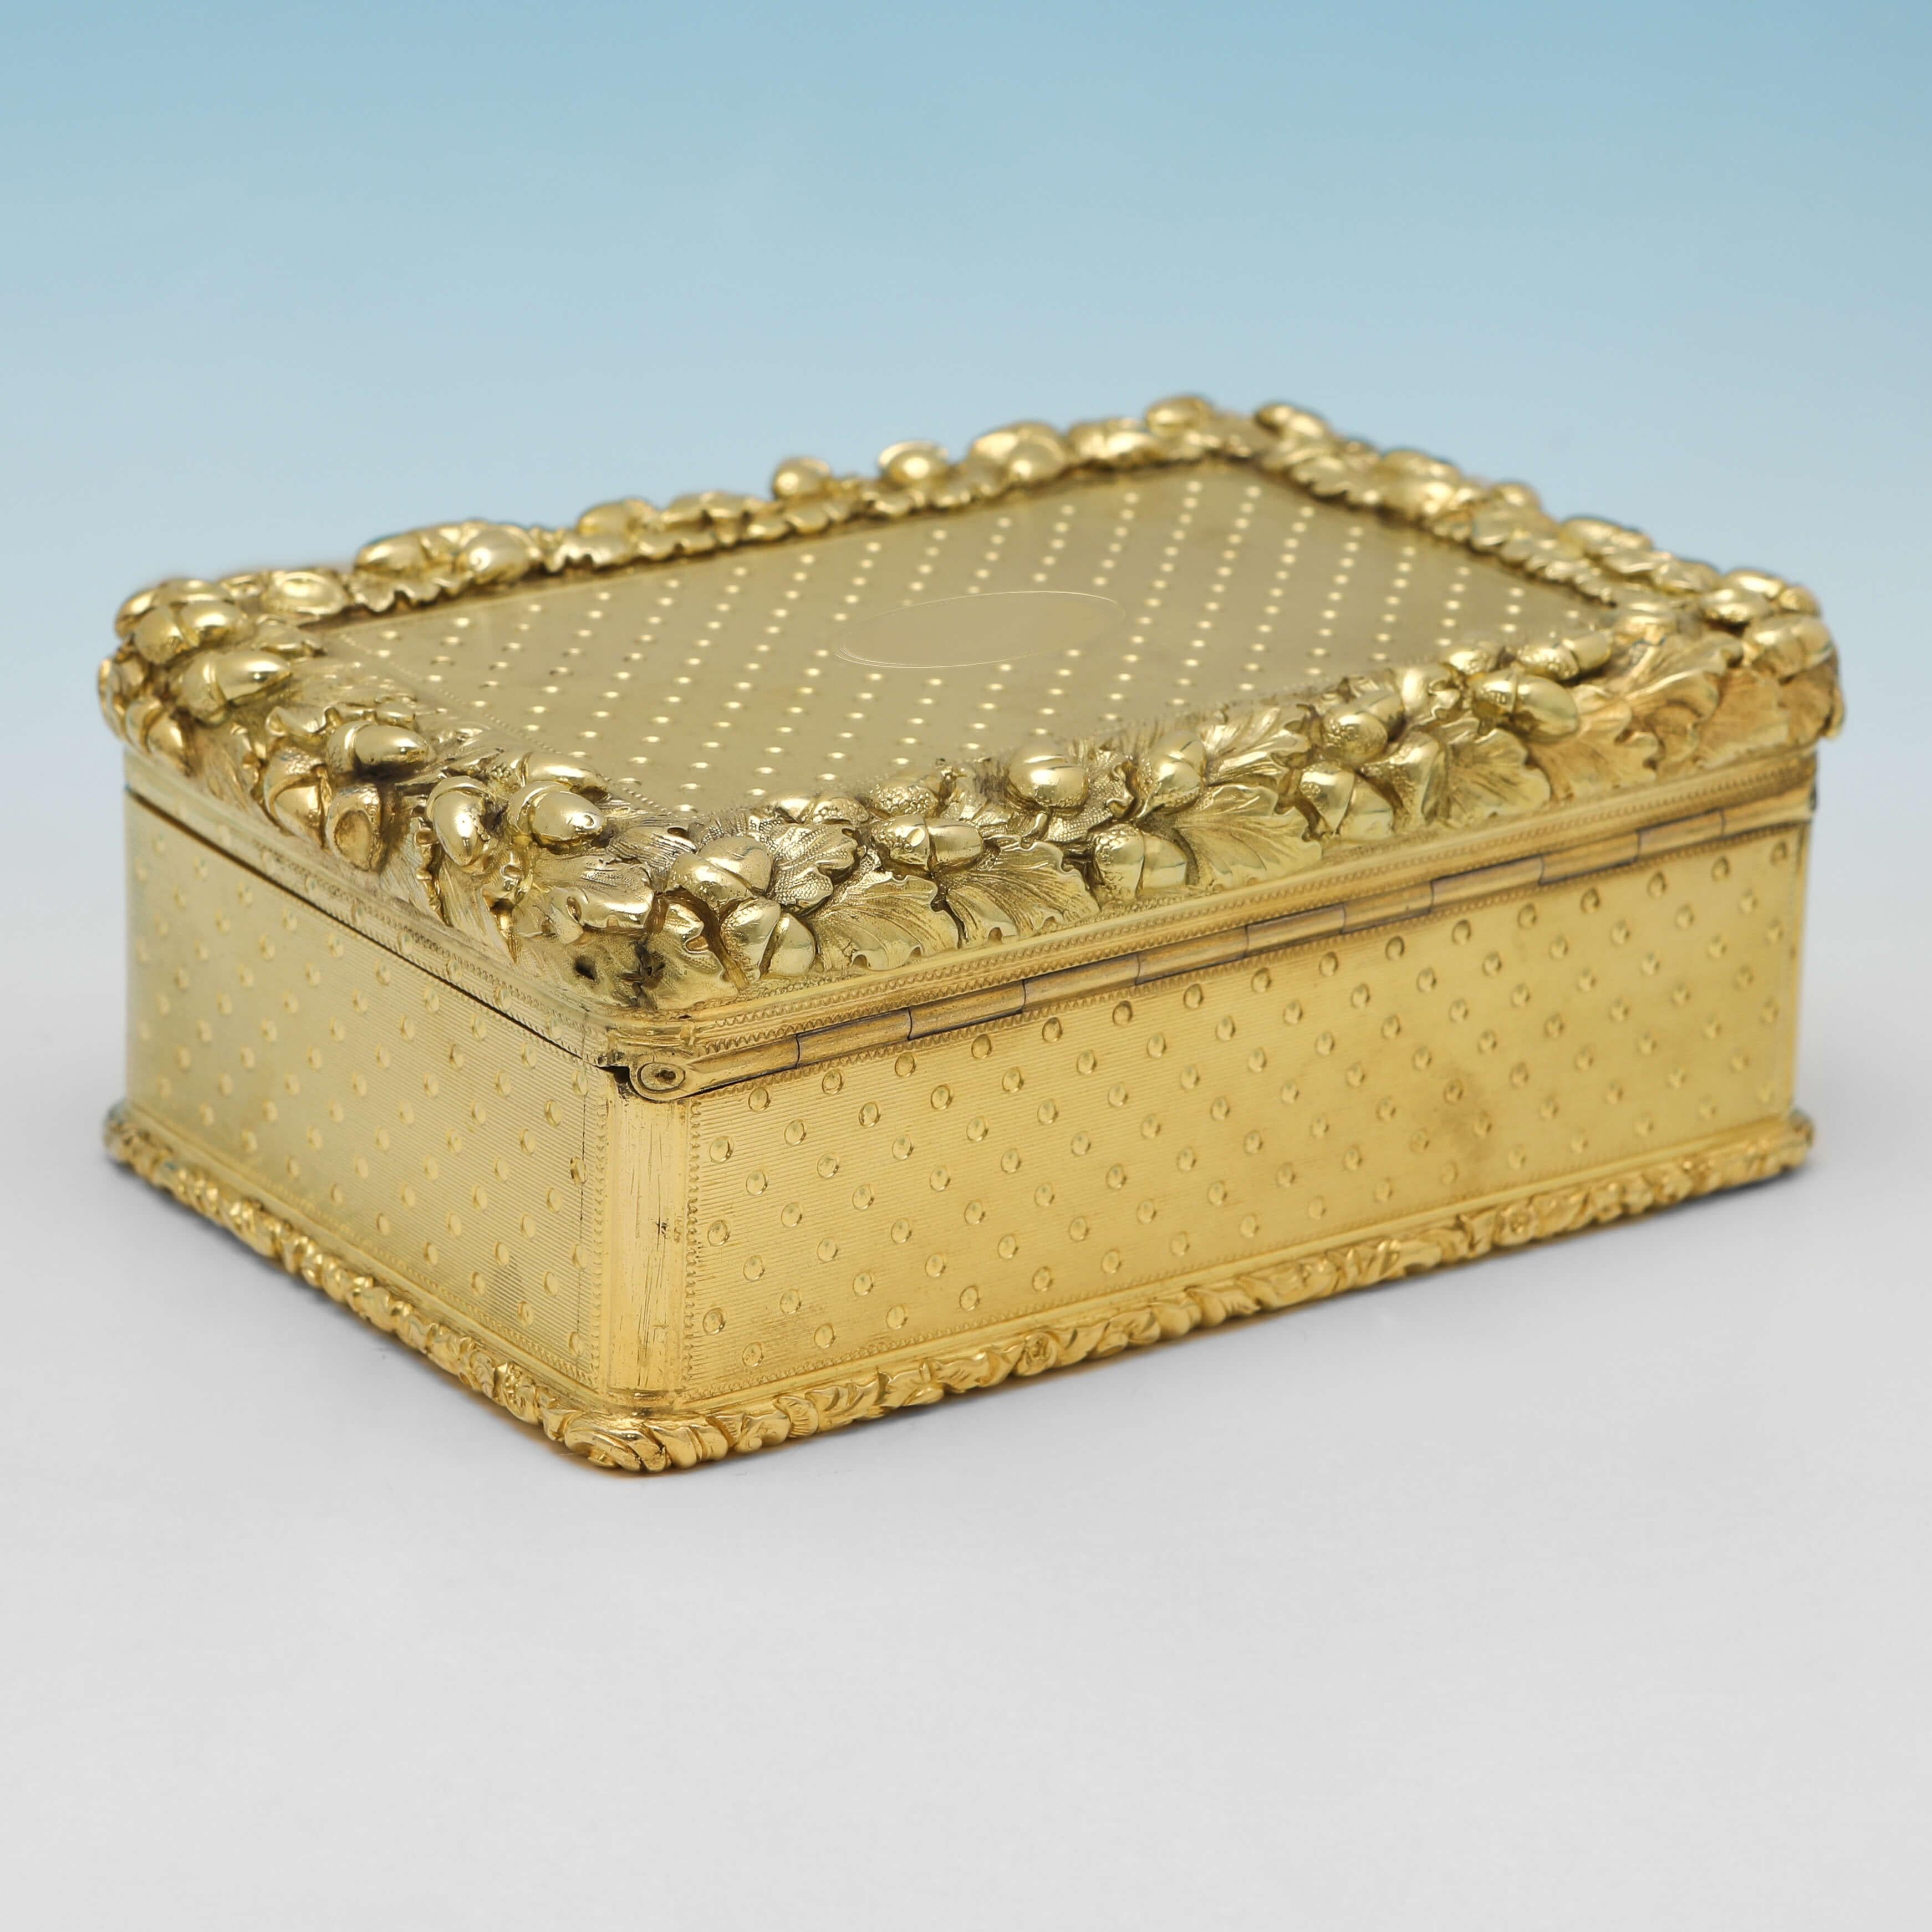 Diese sehr schöne, viktorianische Schnupftabakdose aus antikem Sterlingsilber wurde 1853 in London von Thomas Edwards gepunzt und zeichnet sich durch eine gedrechselte Verzierung, einen gegossenen Rand mit Eicheldetails und eine Originalvergoldung